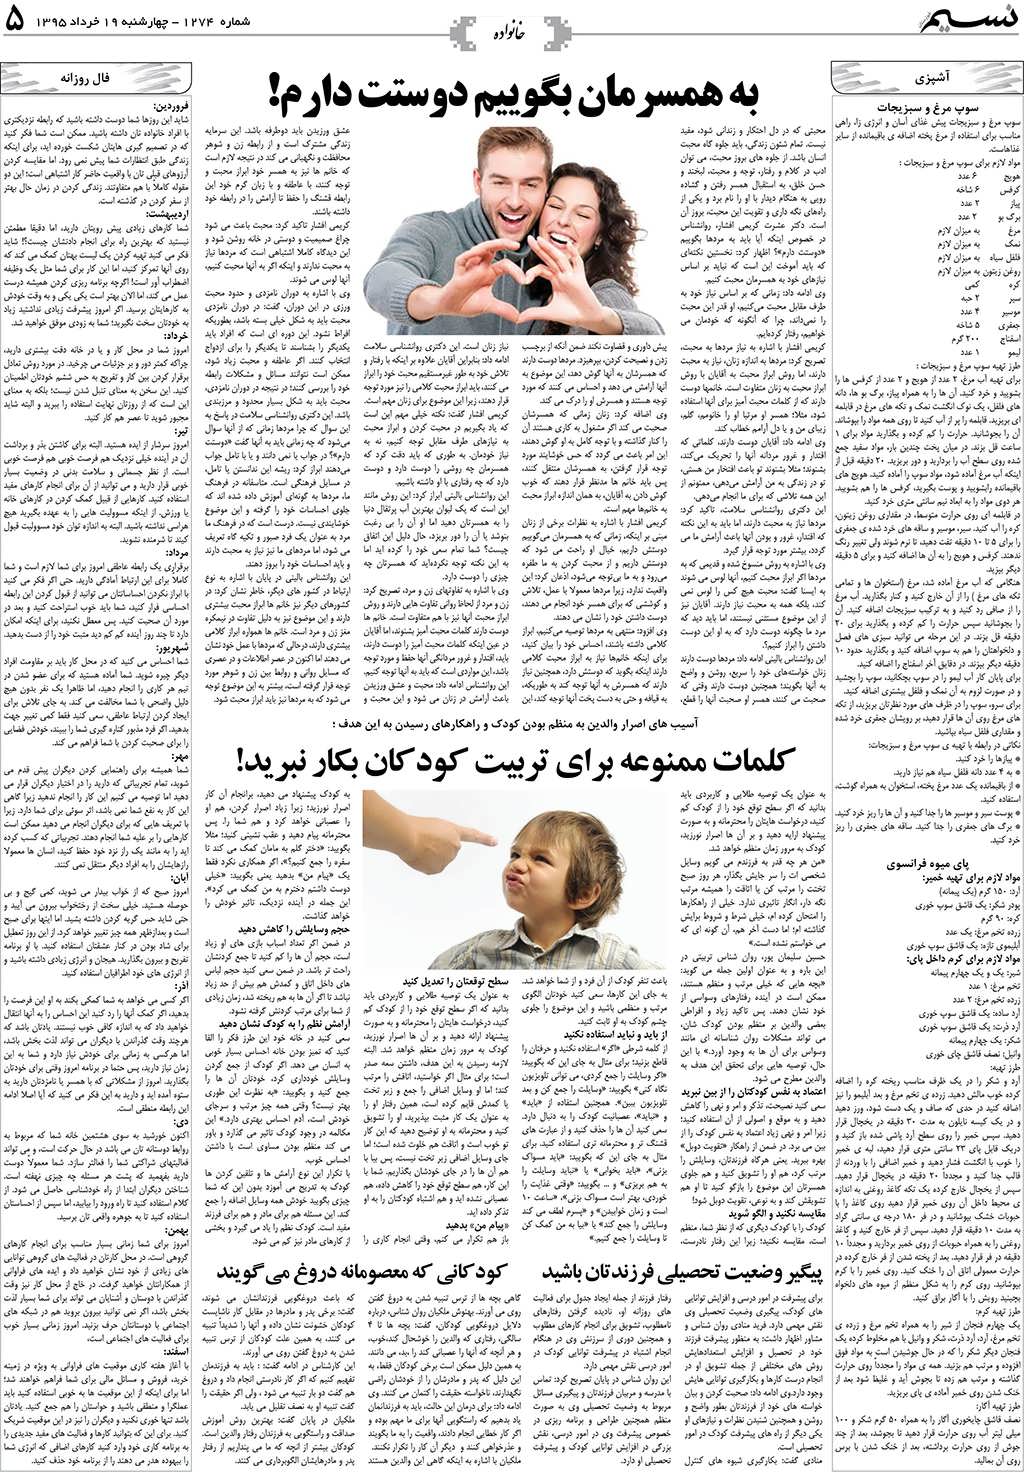 صفحه خانواده روزنامه نسیم شماره 1274